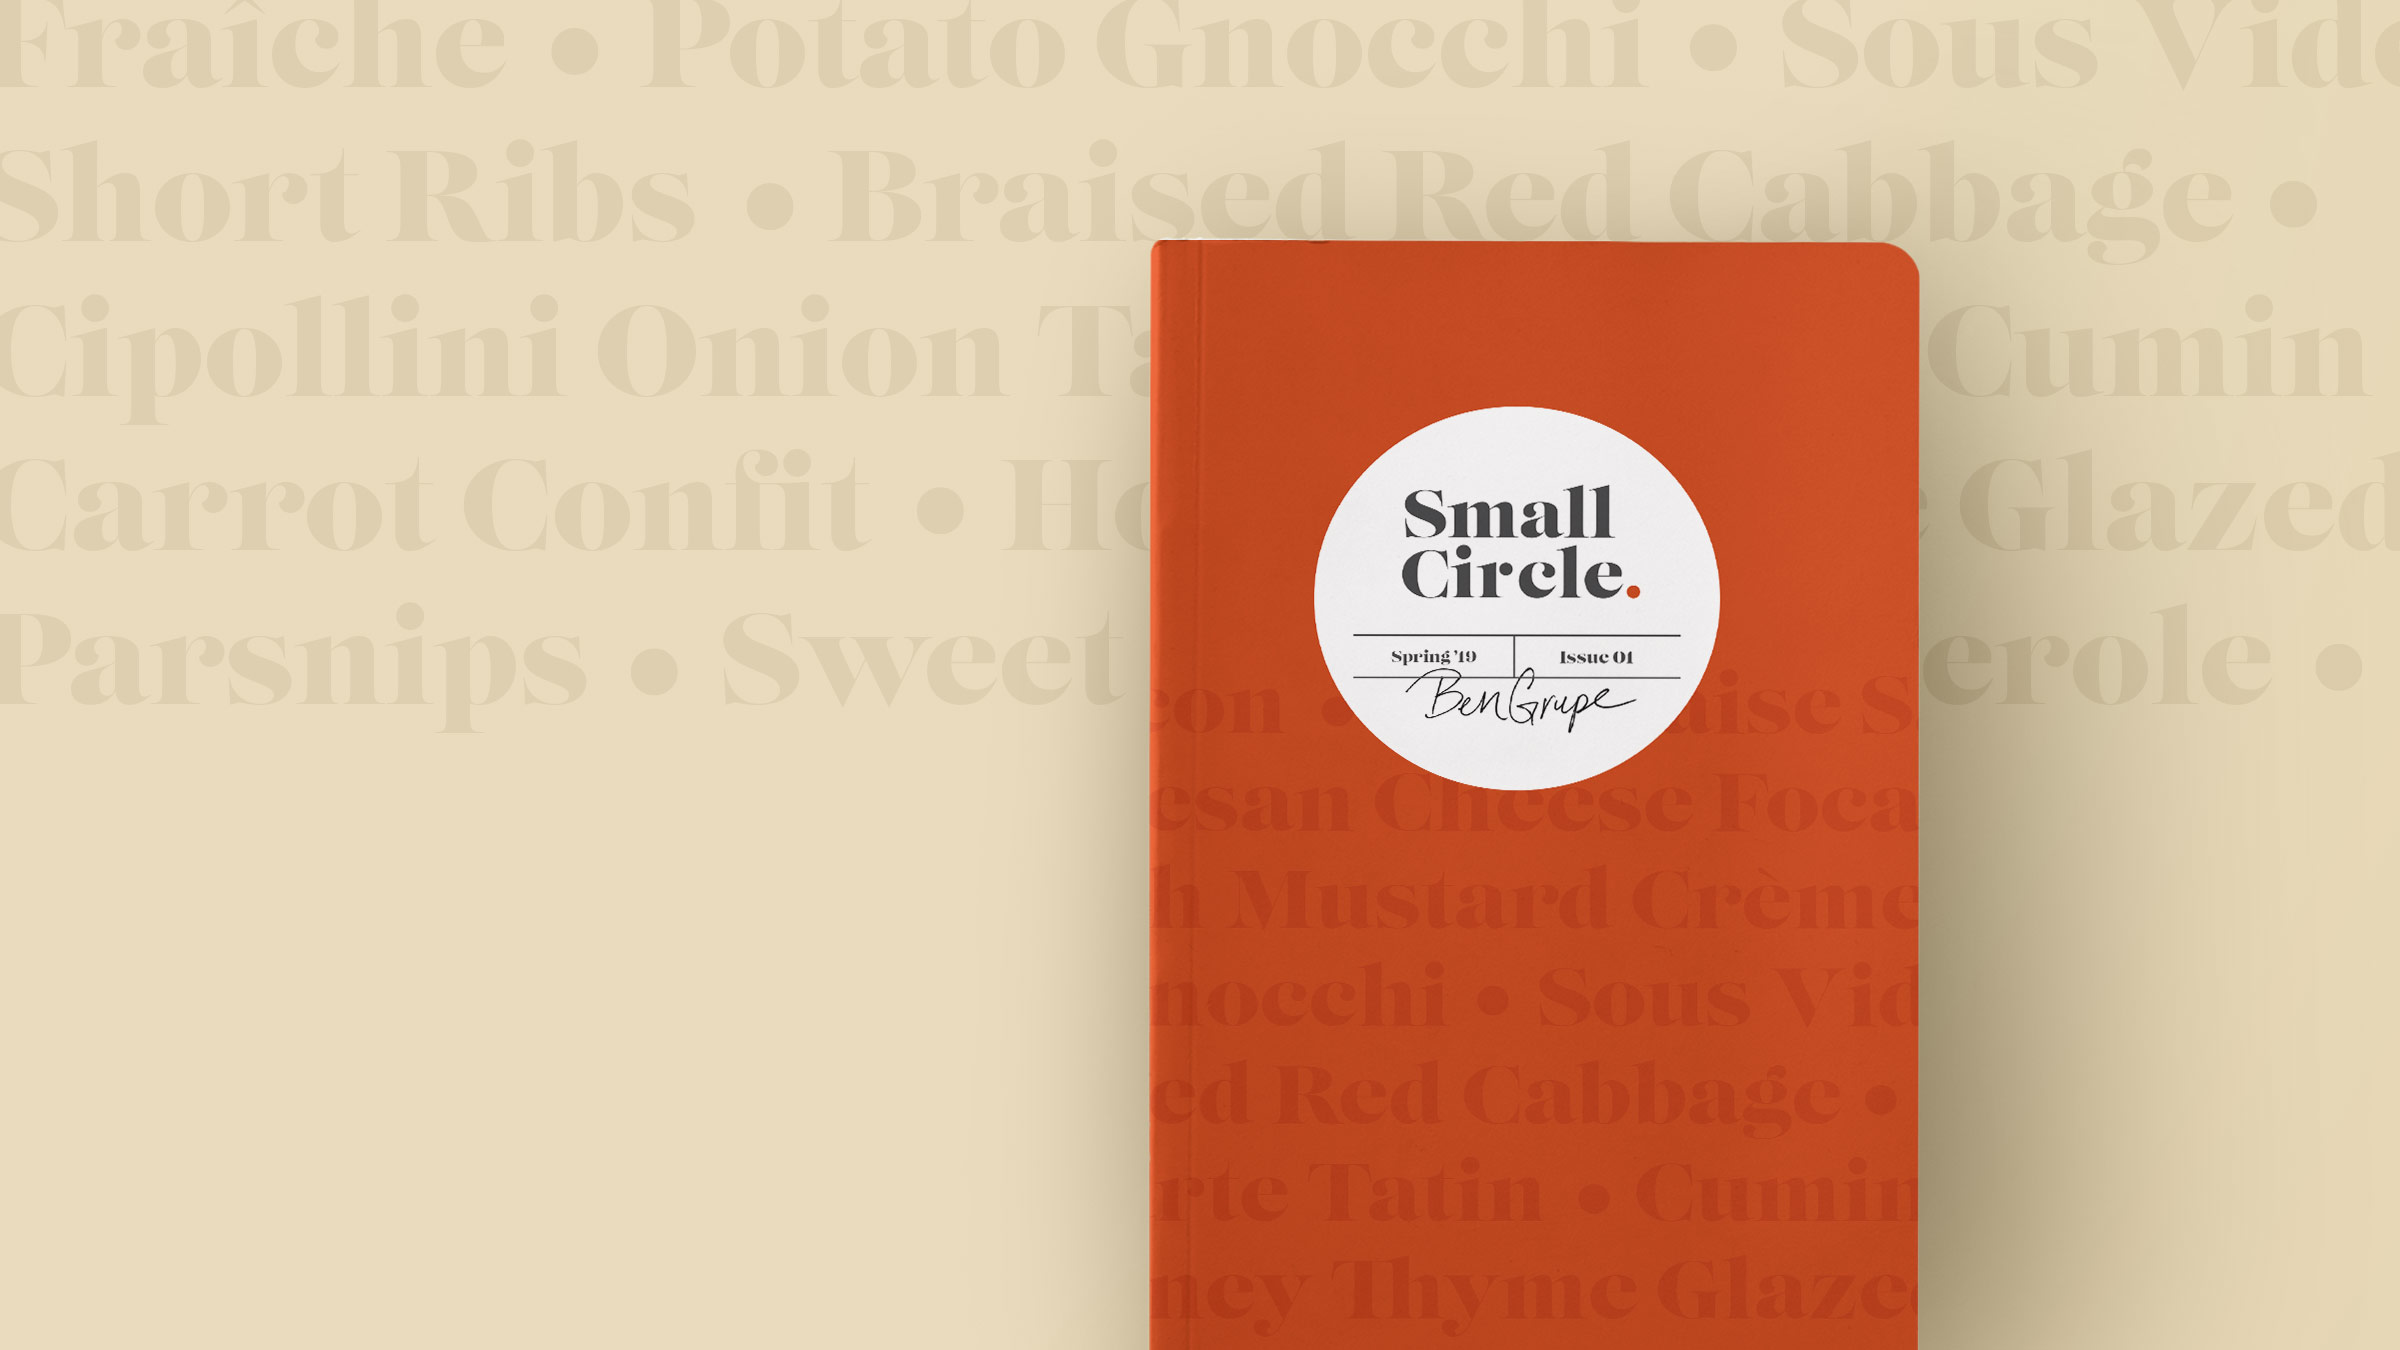 Small Circle Cookbook cover design